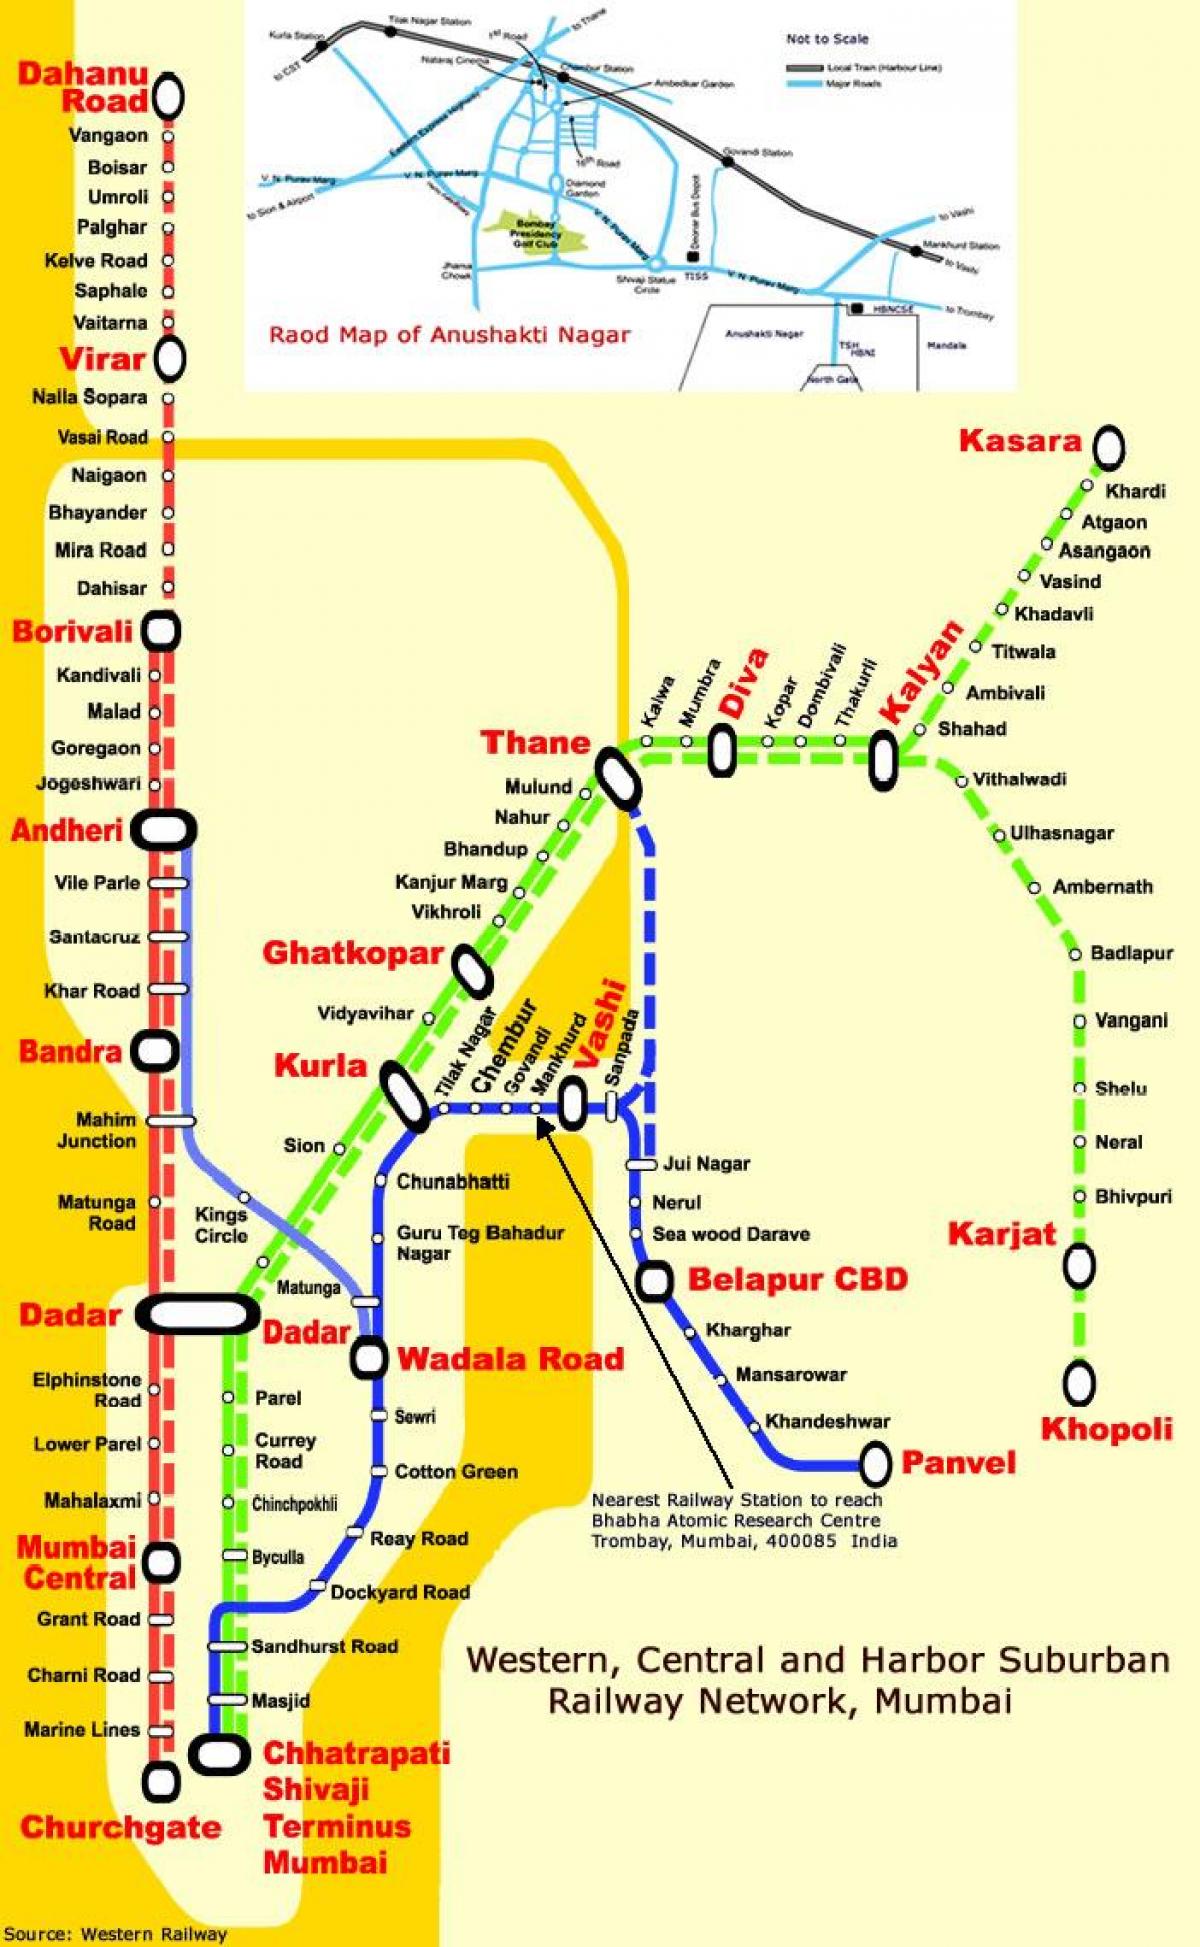 Mumbai central line-Stationen anzeigen